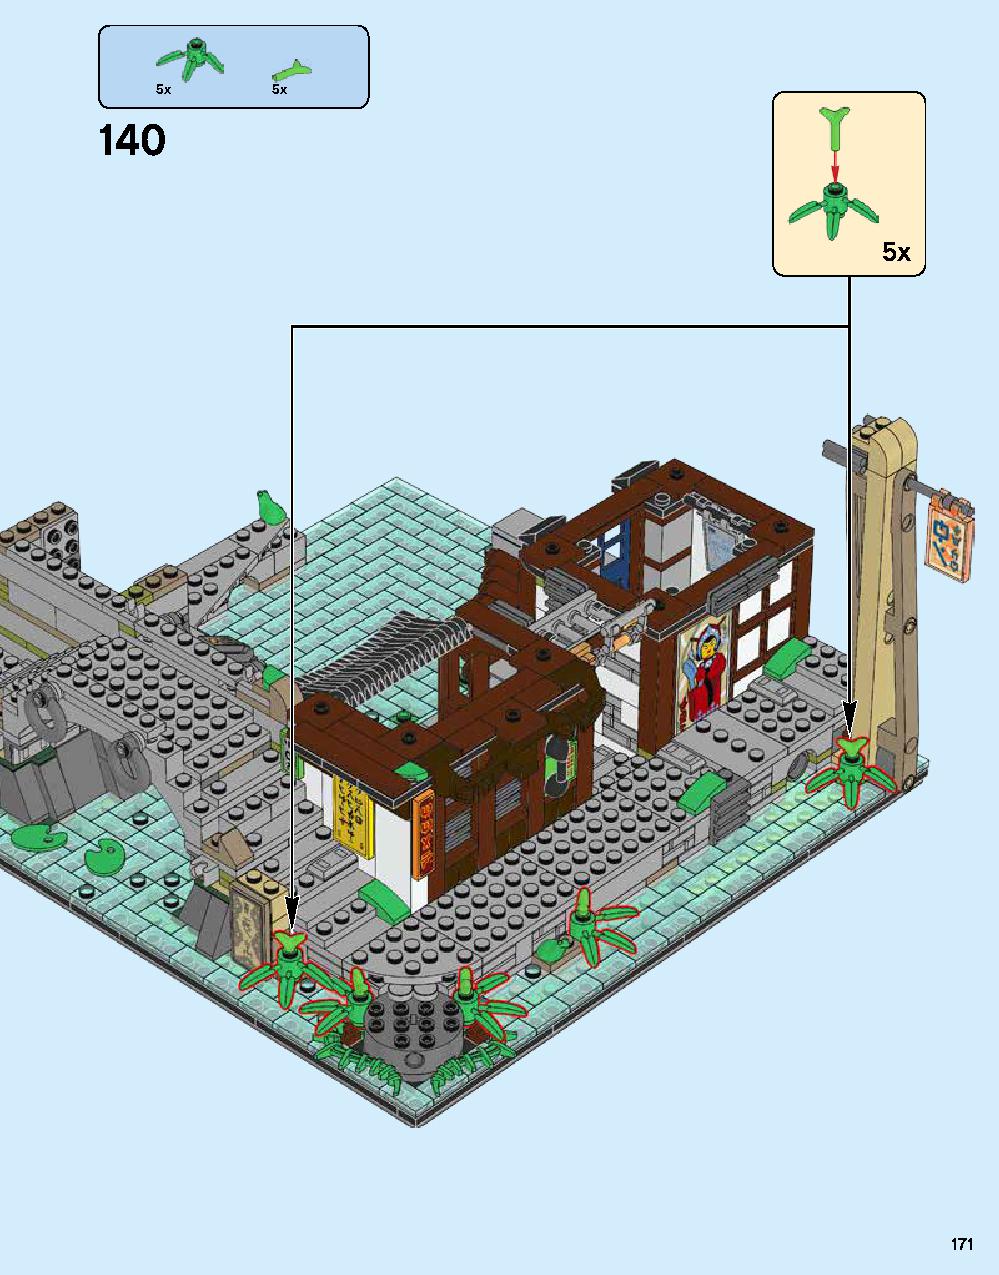 ニンジャゴー シティ 70620 レゴの商品情報 レゴの説明書・組立方法 171 page